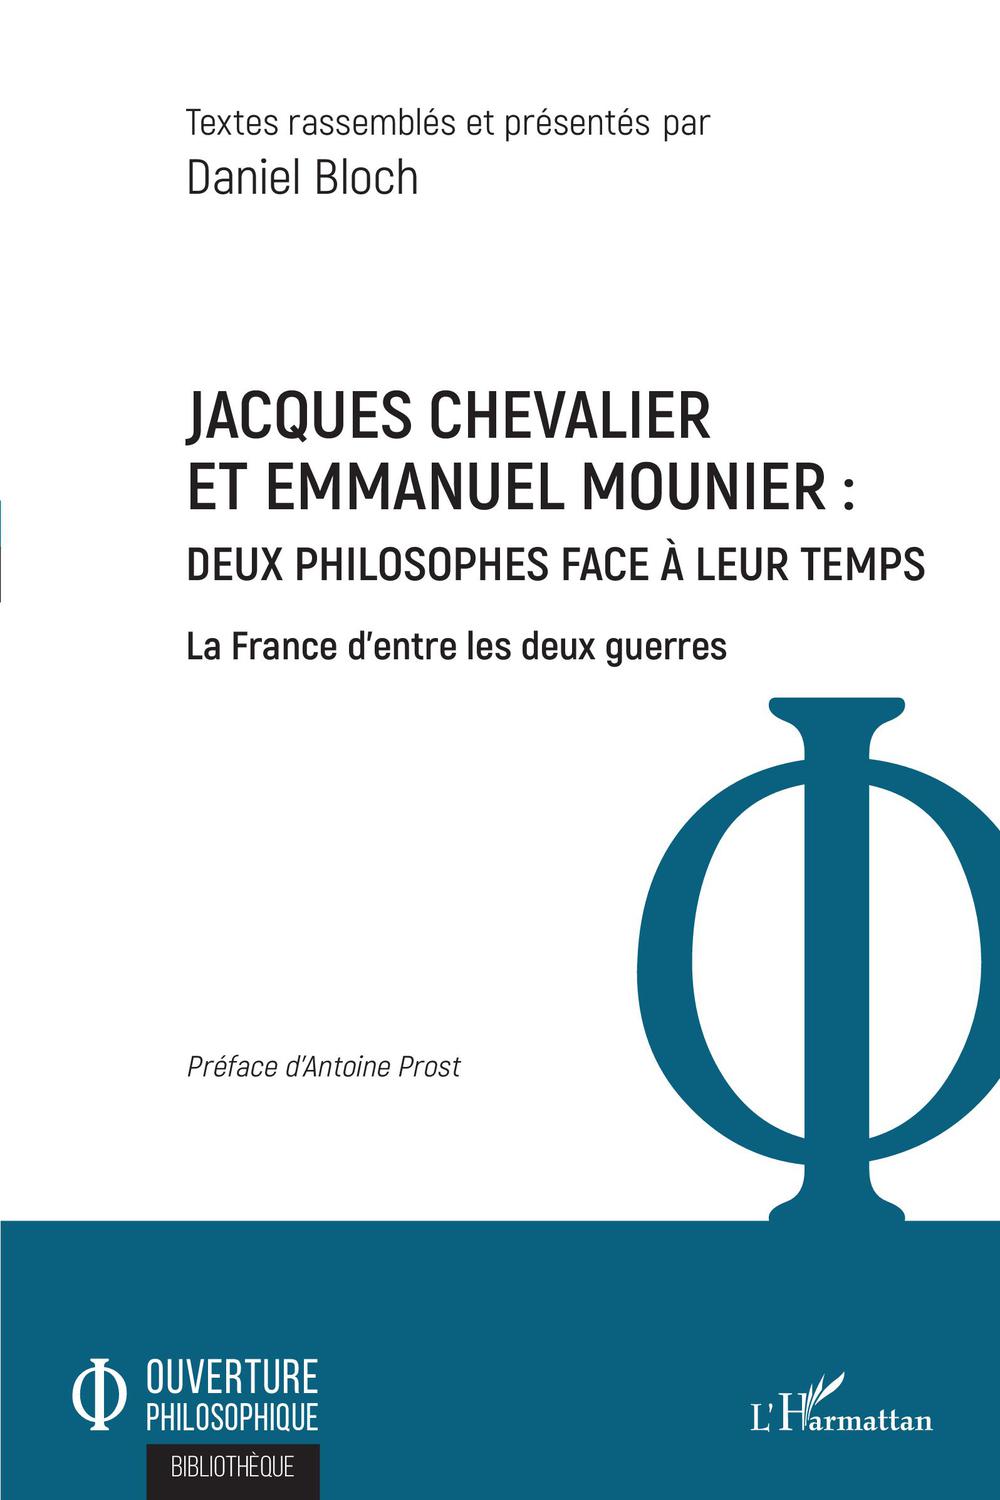 Jacques Chevalier et Emmanuel Mounier - Daniel Bloch